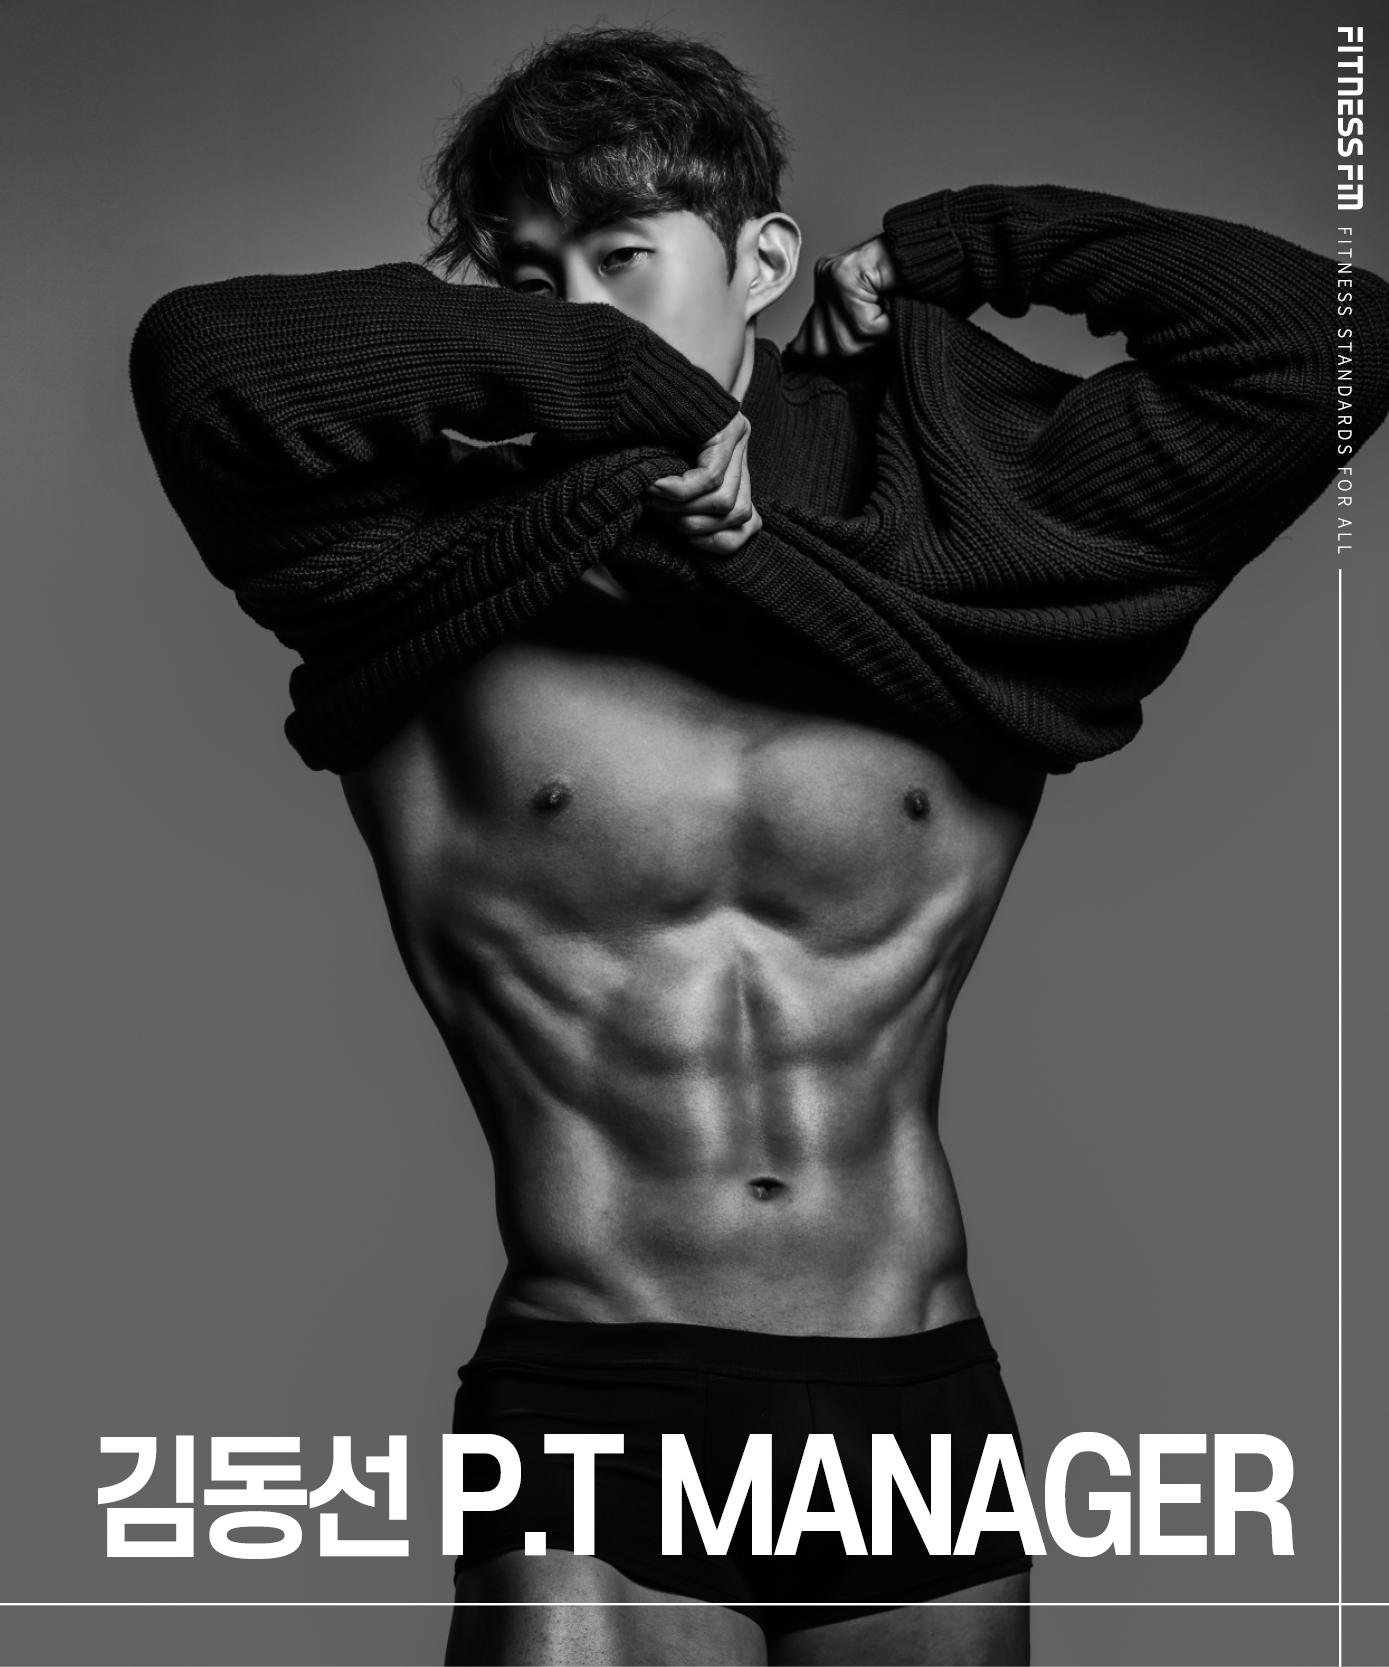 김동선 p.t manager